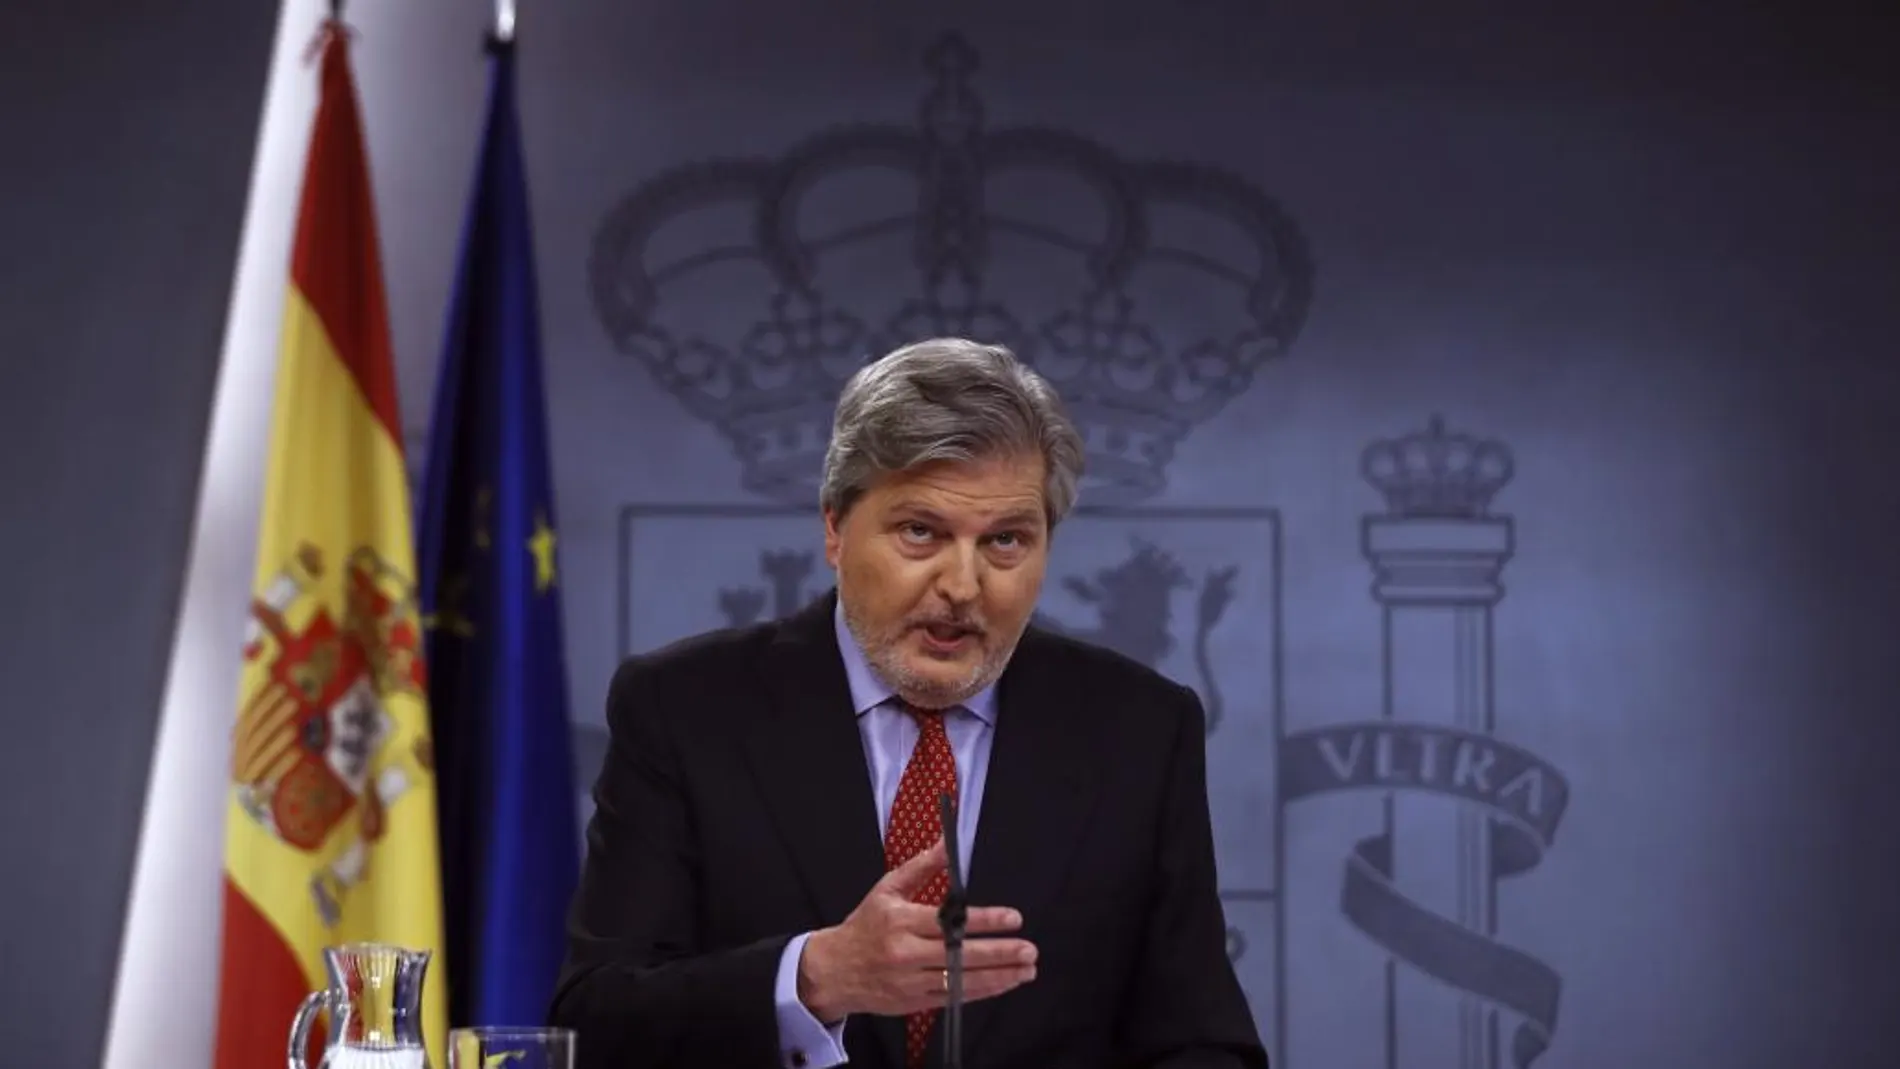 El portavoz del Gobierno, Íñigo Méndez de Vigo, durante la rueda de prensa tras la reunión del Consejo de Ministros